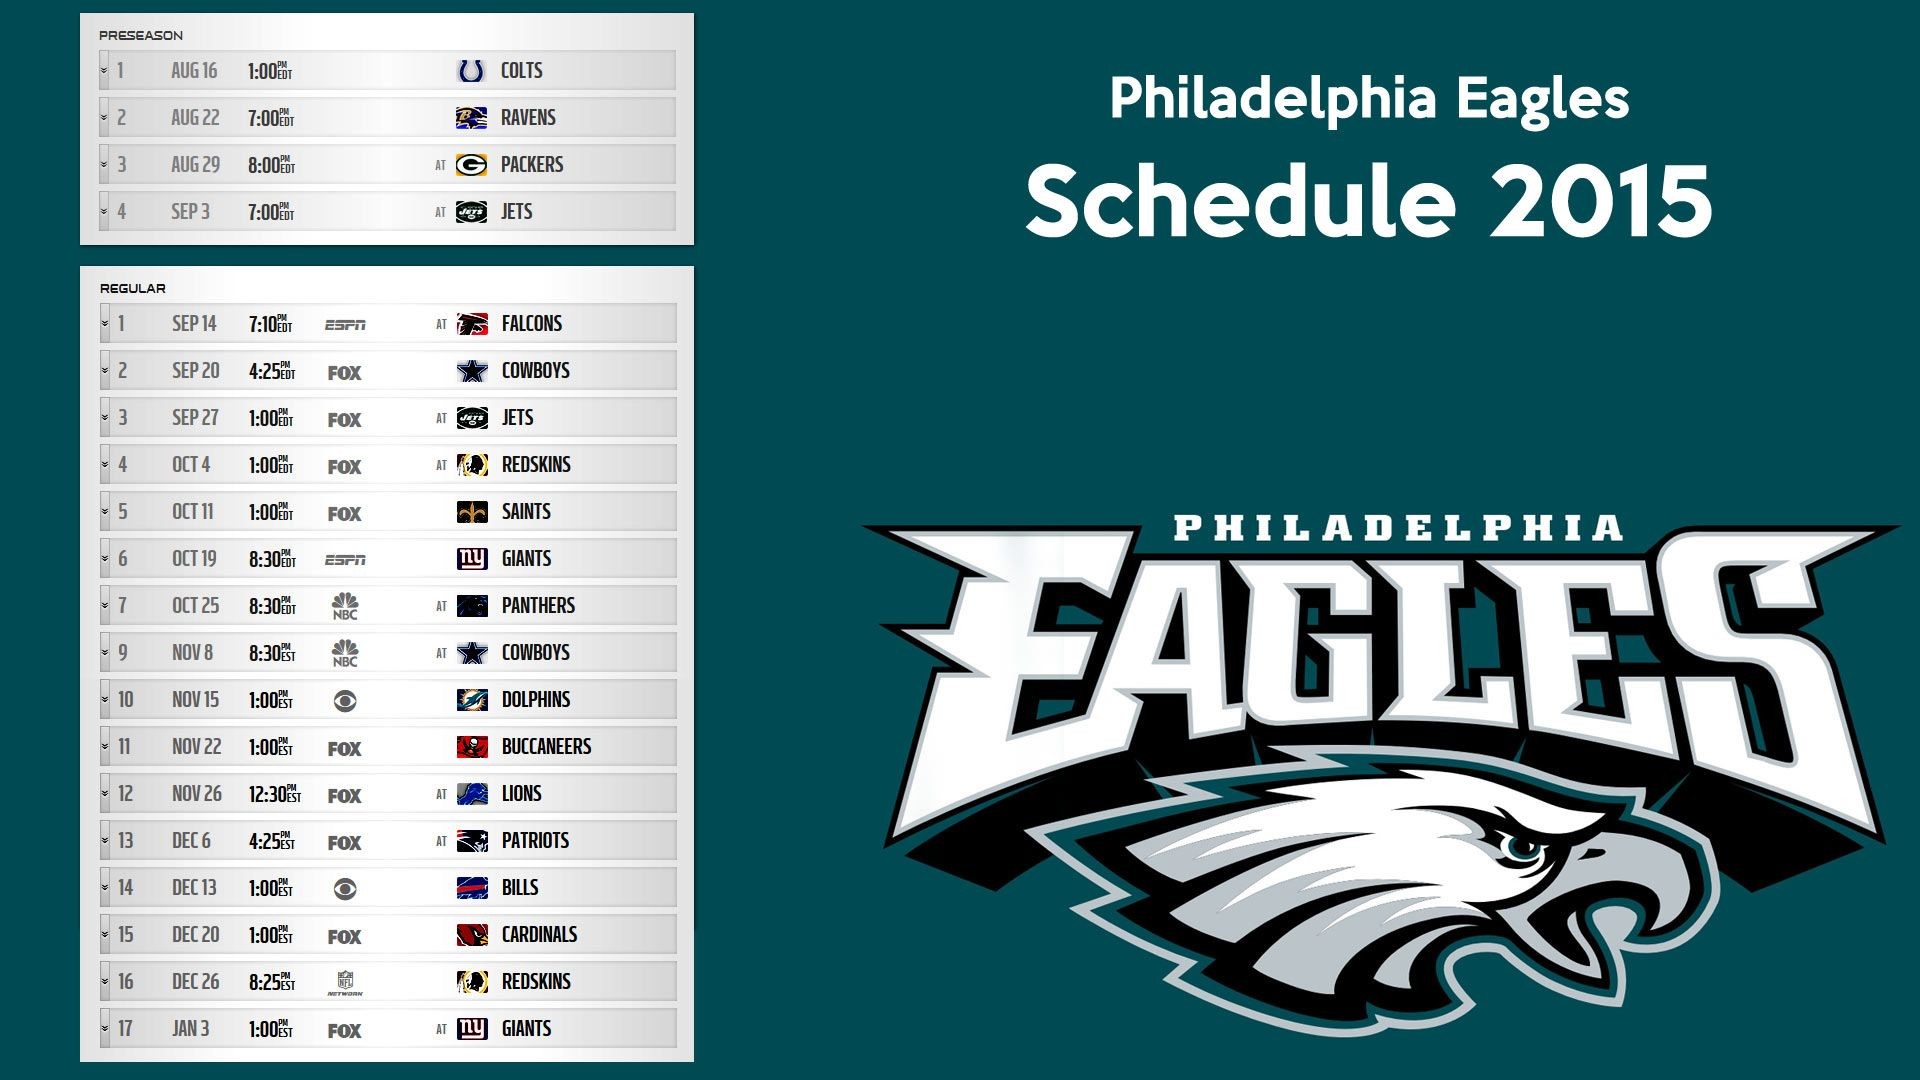 Philadelphia Eagles schedule 2015 wallpaper Free full hd